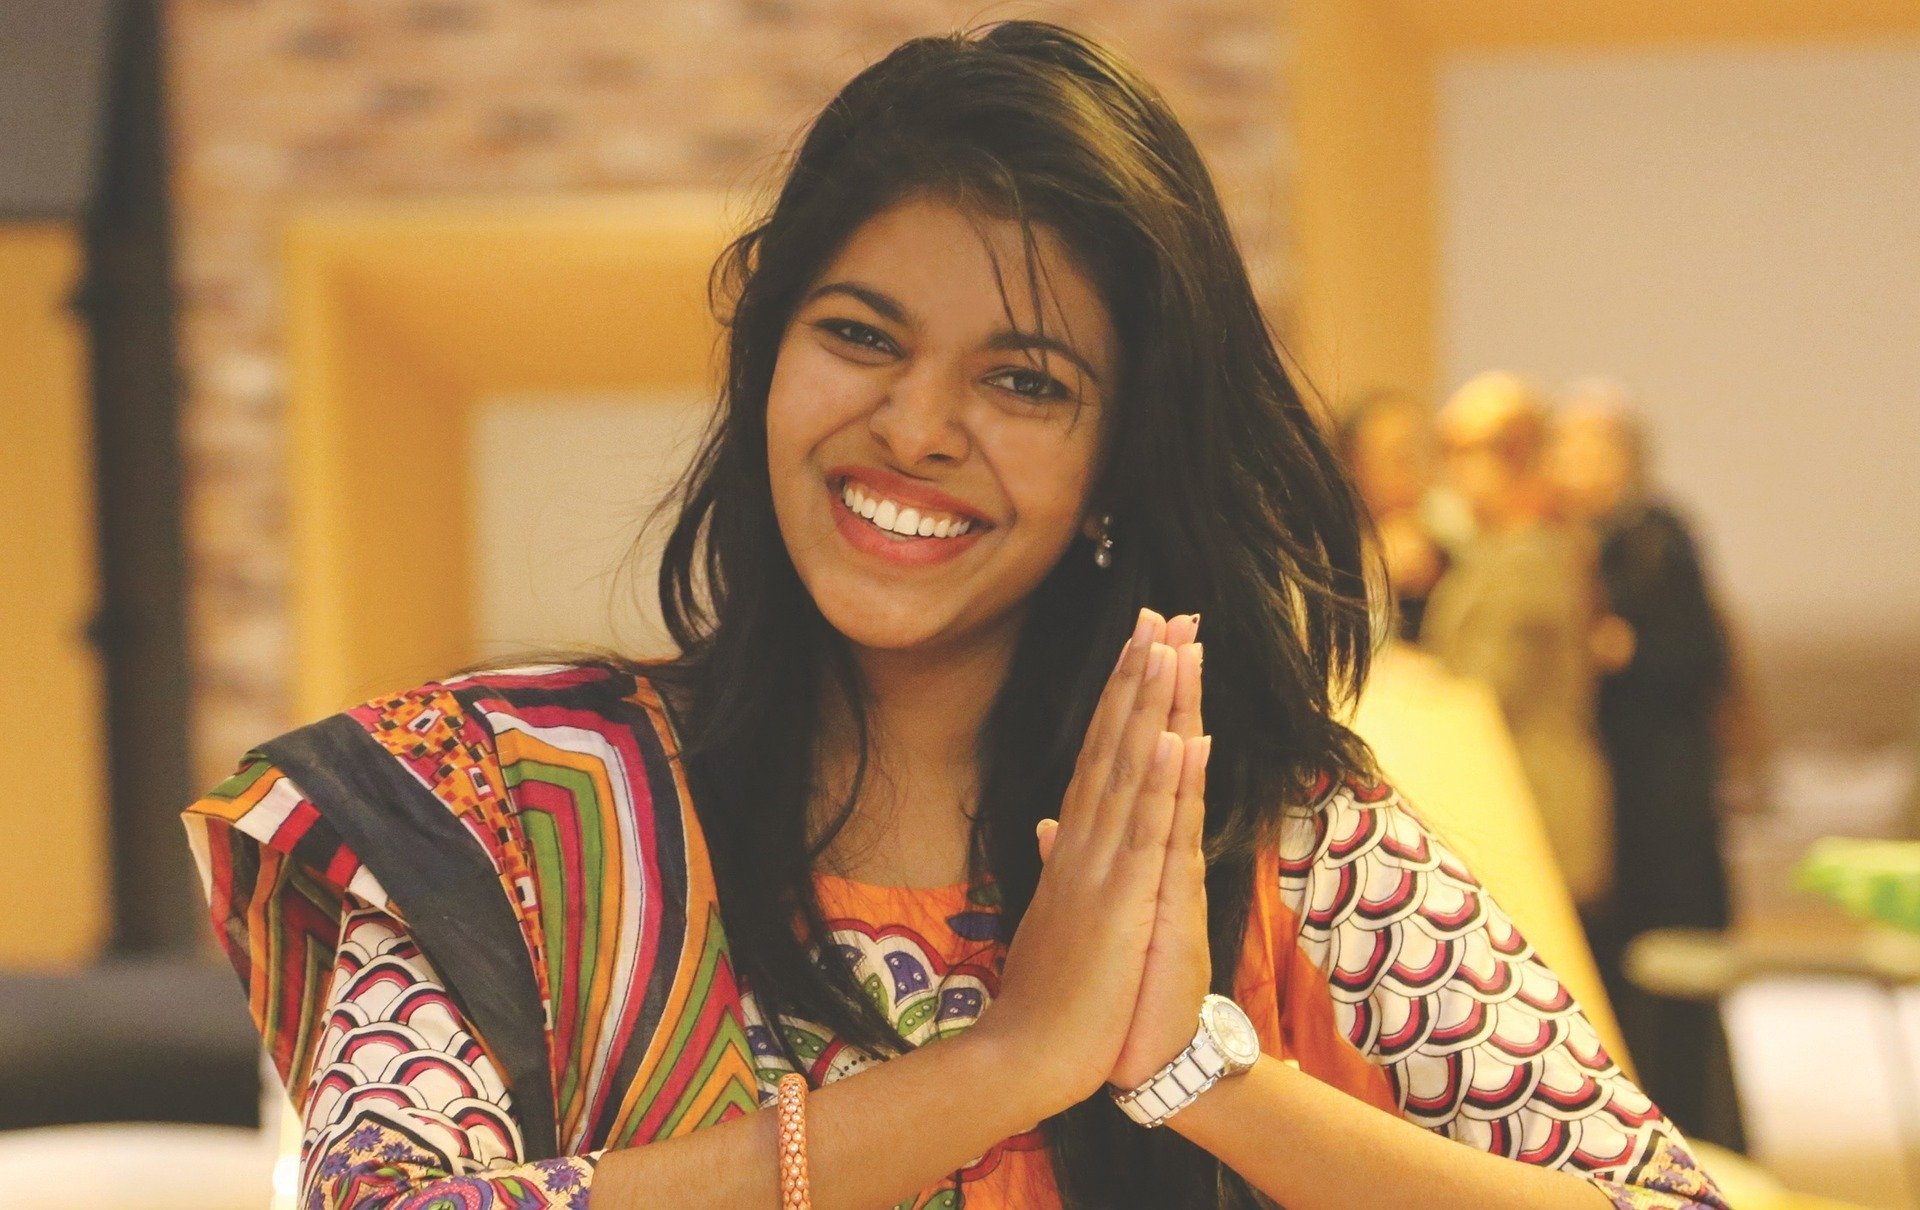 Mulher usando roupas indianas, sorrindo e com as mãos unidas em sinal de gratidão